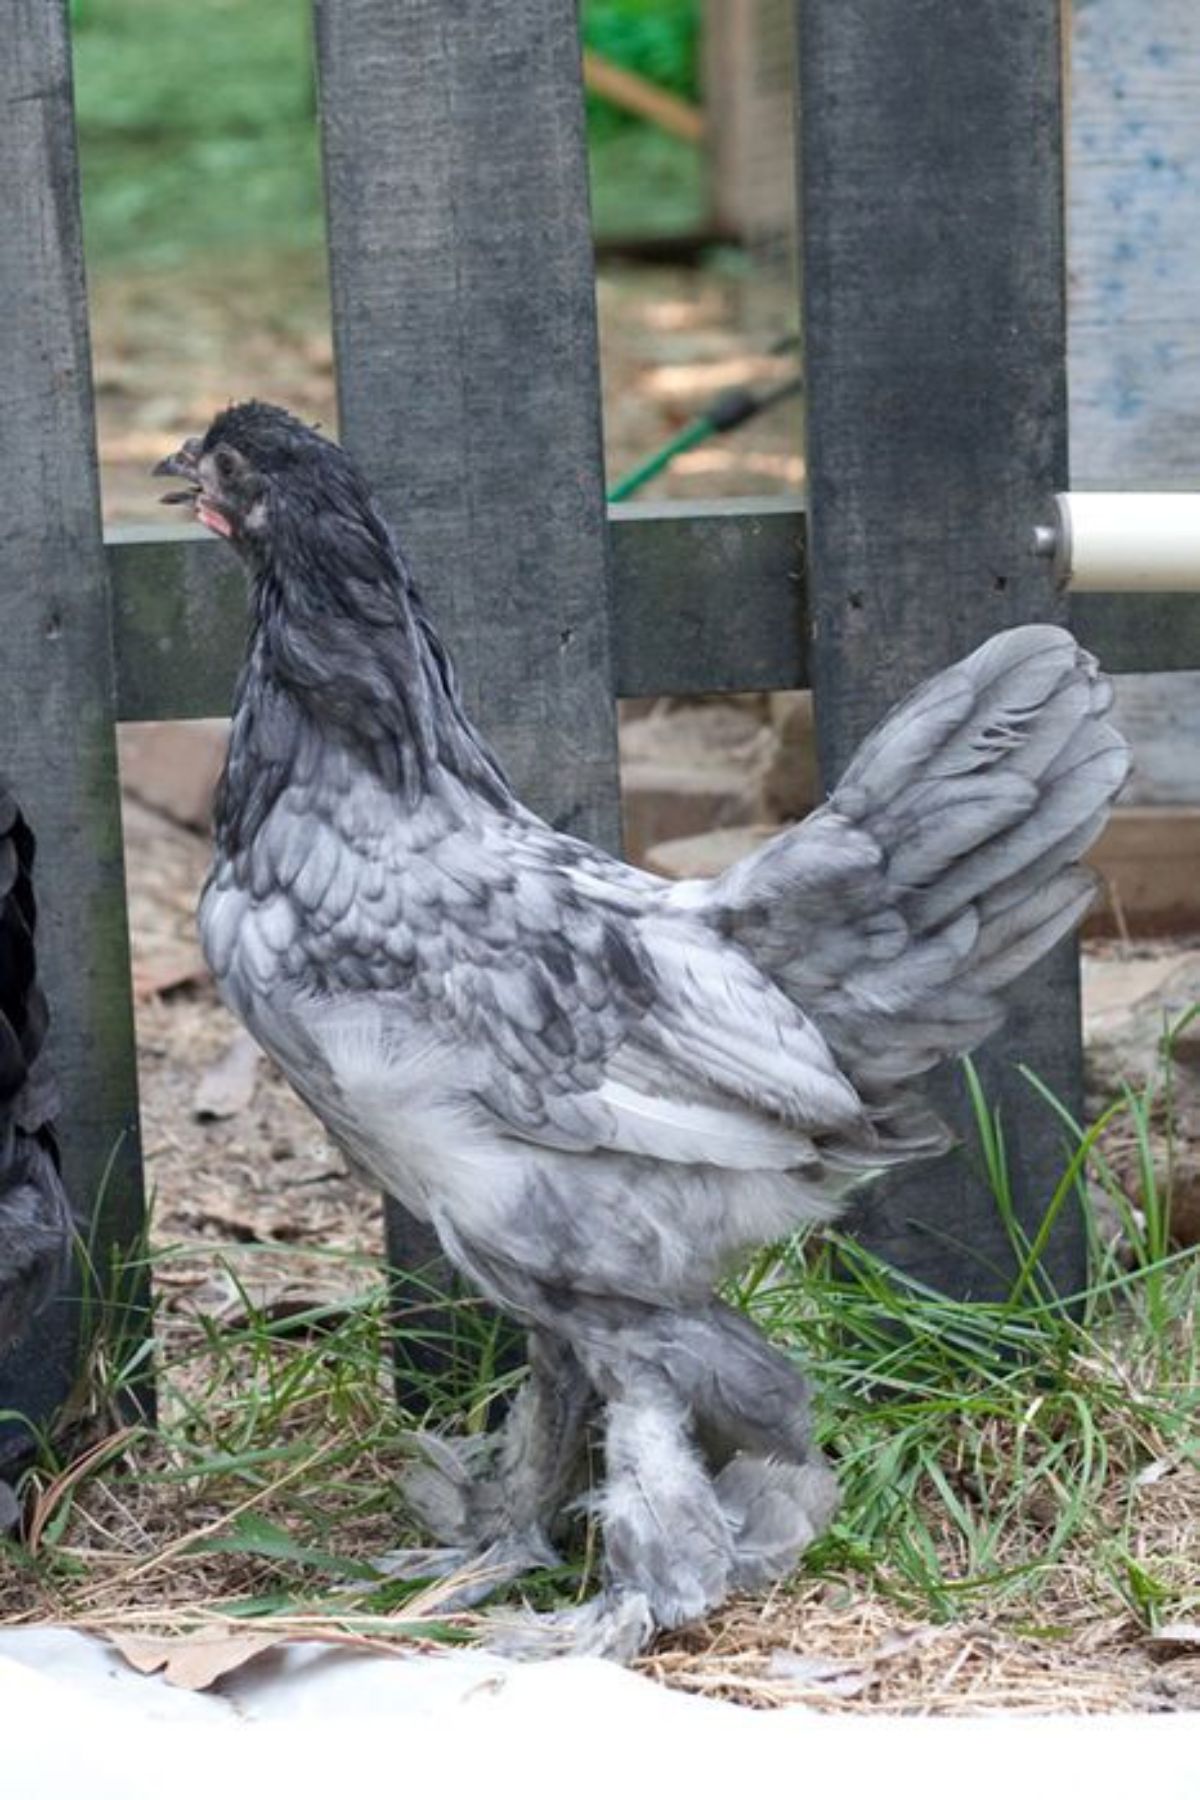 A gray Breda hen near a wooden fence.